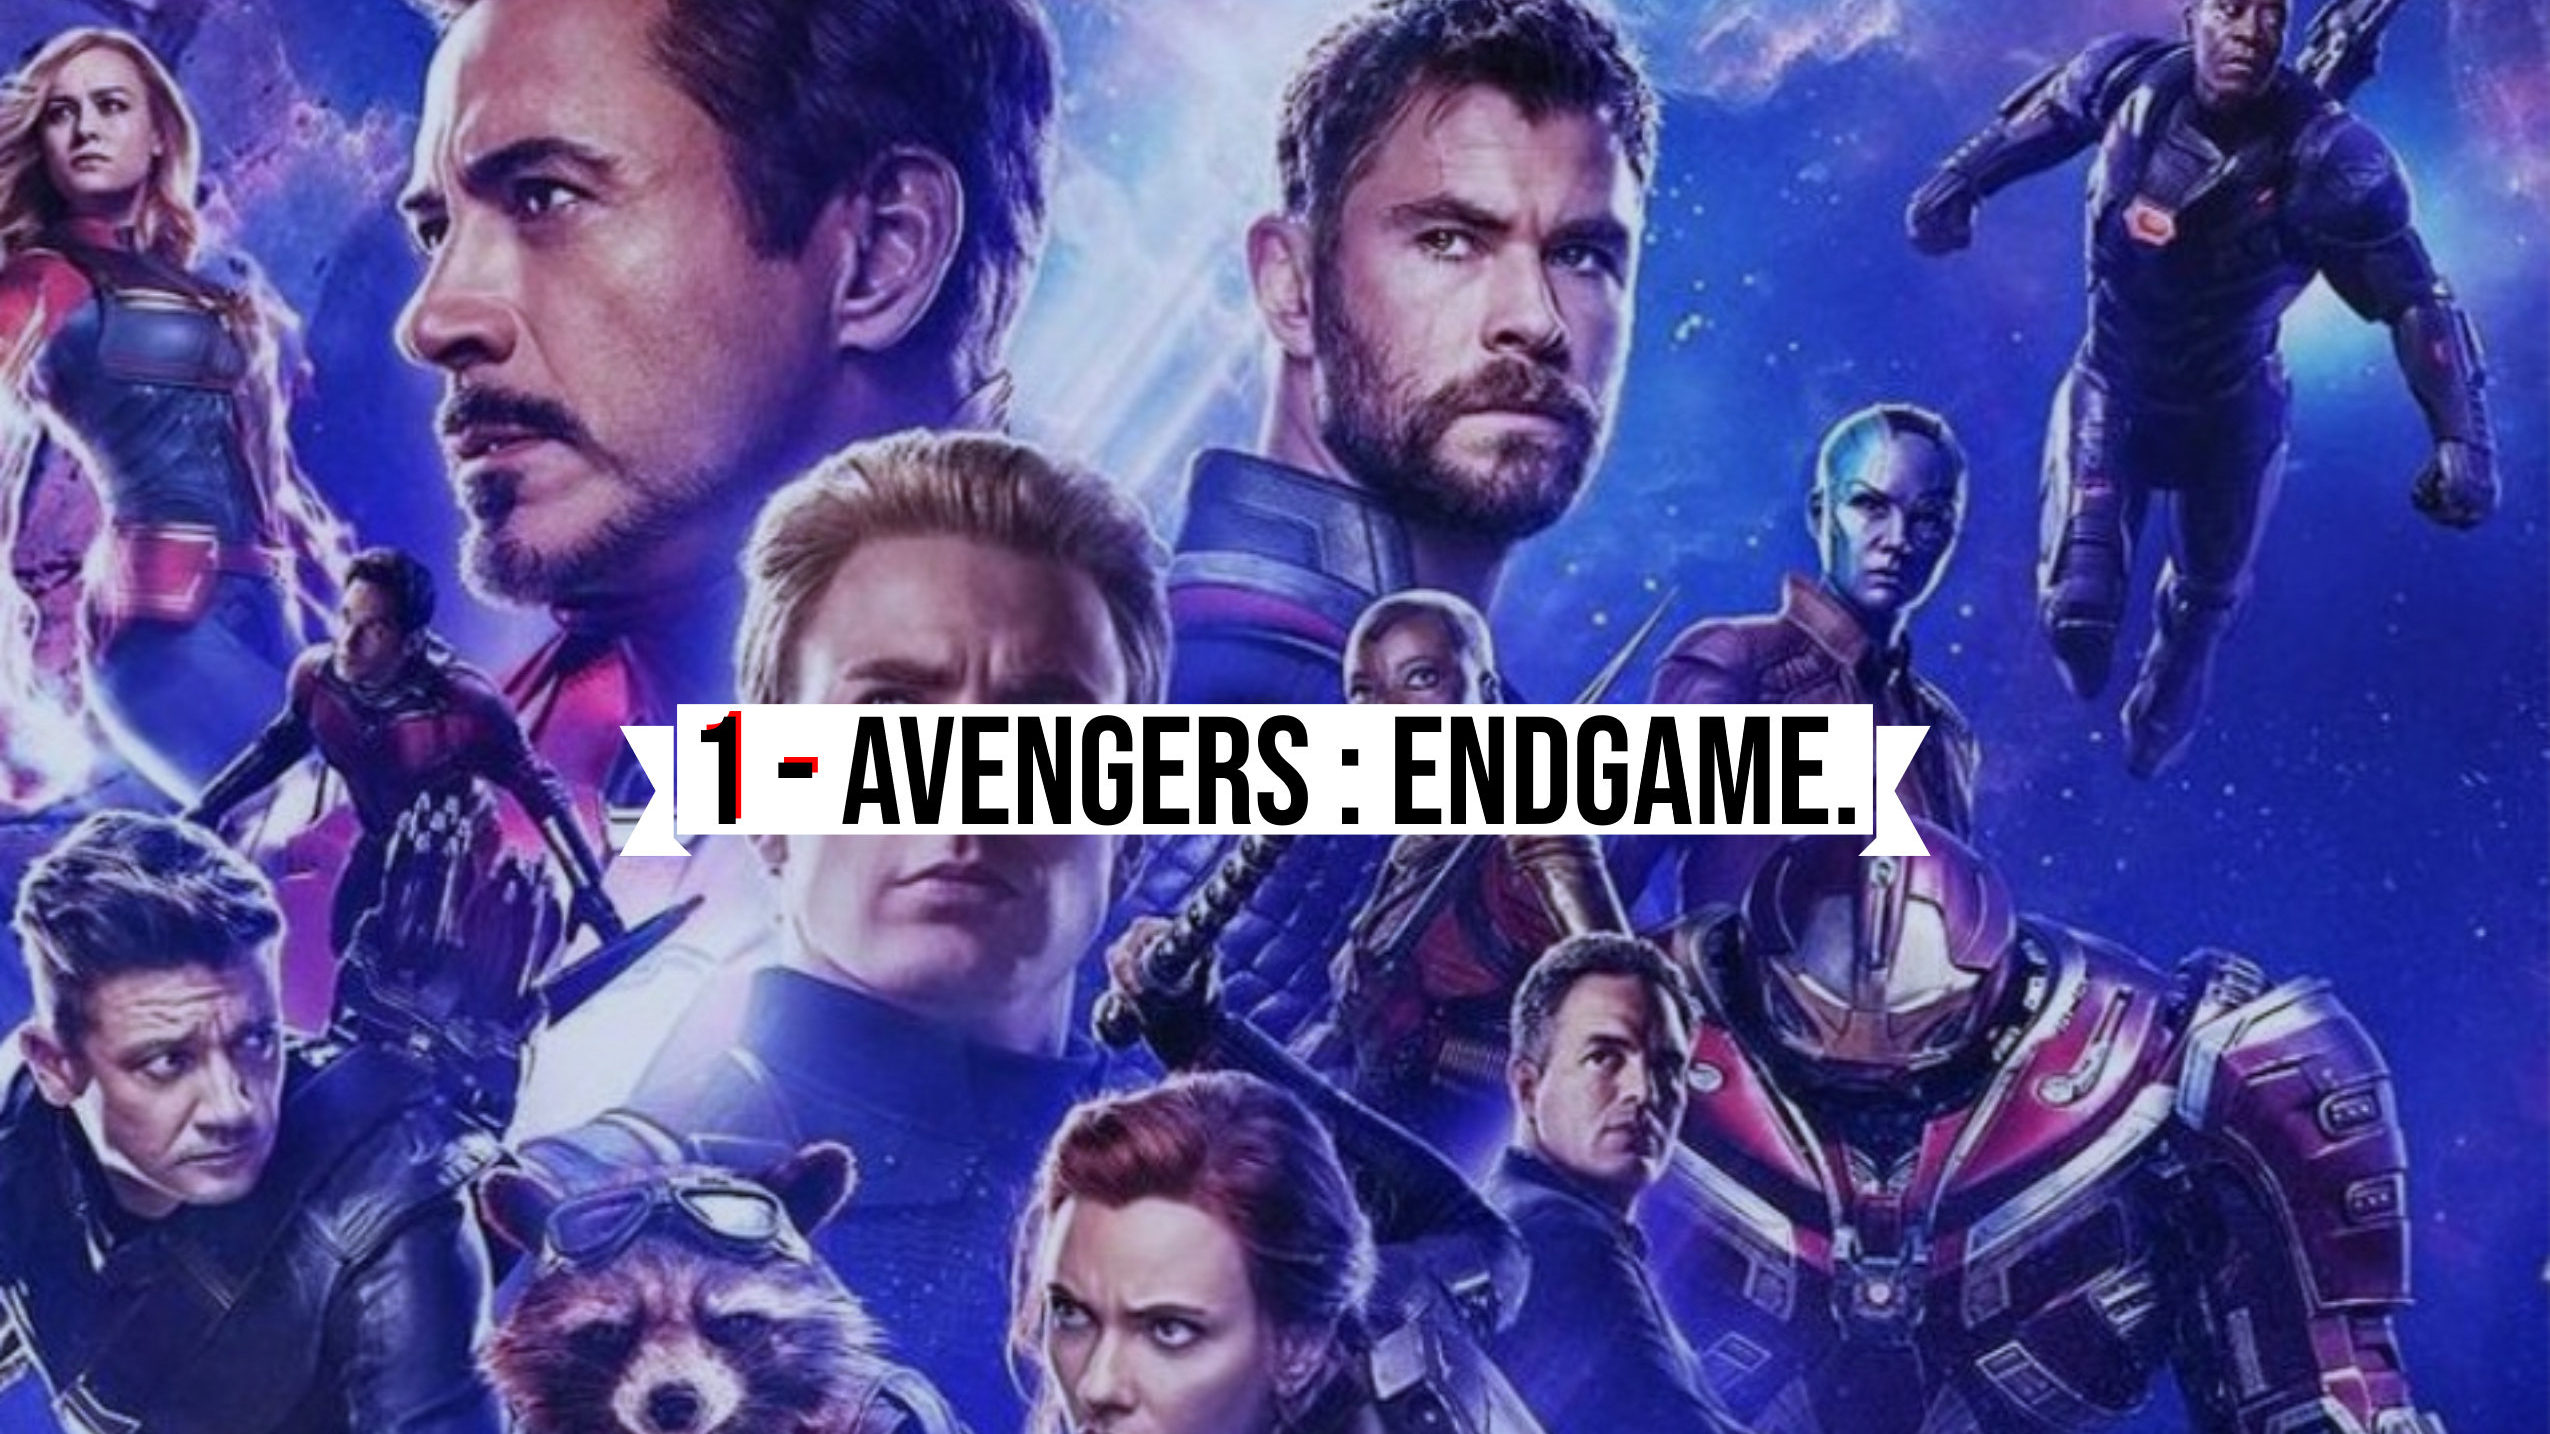 1 - Avengers Endgame.